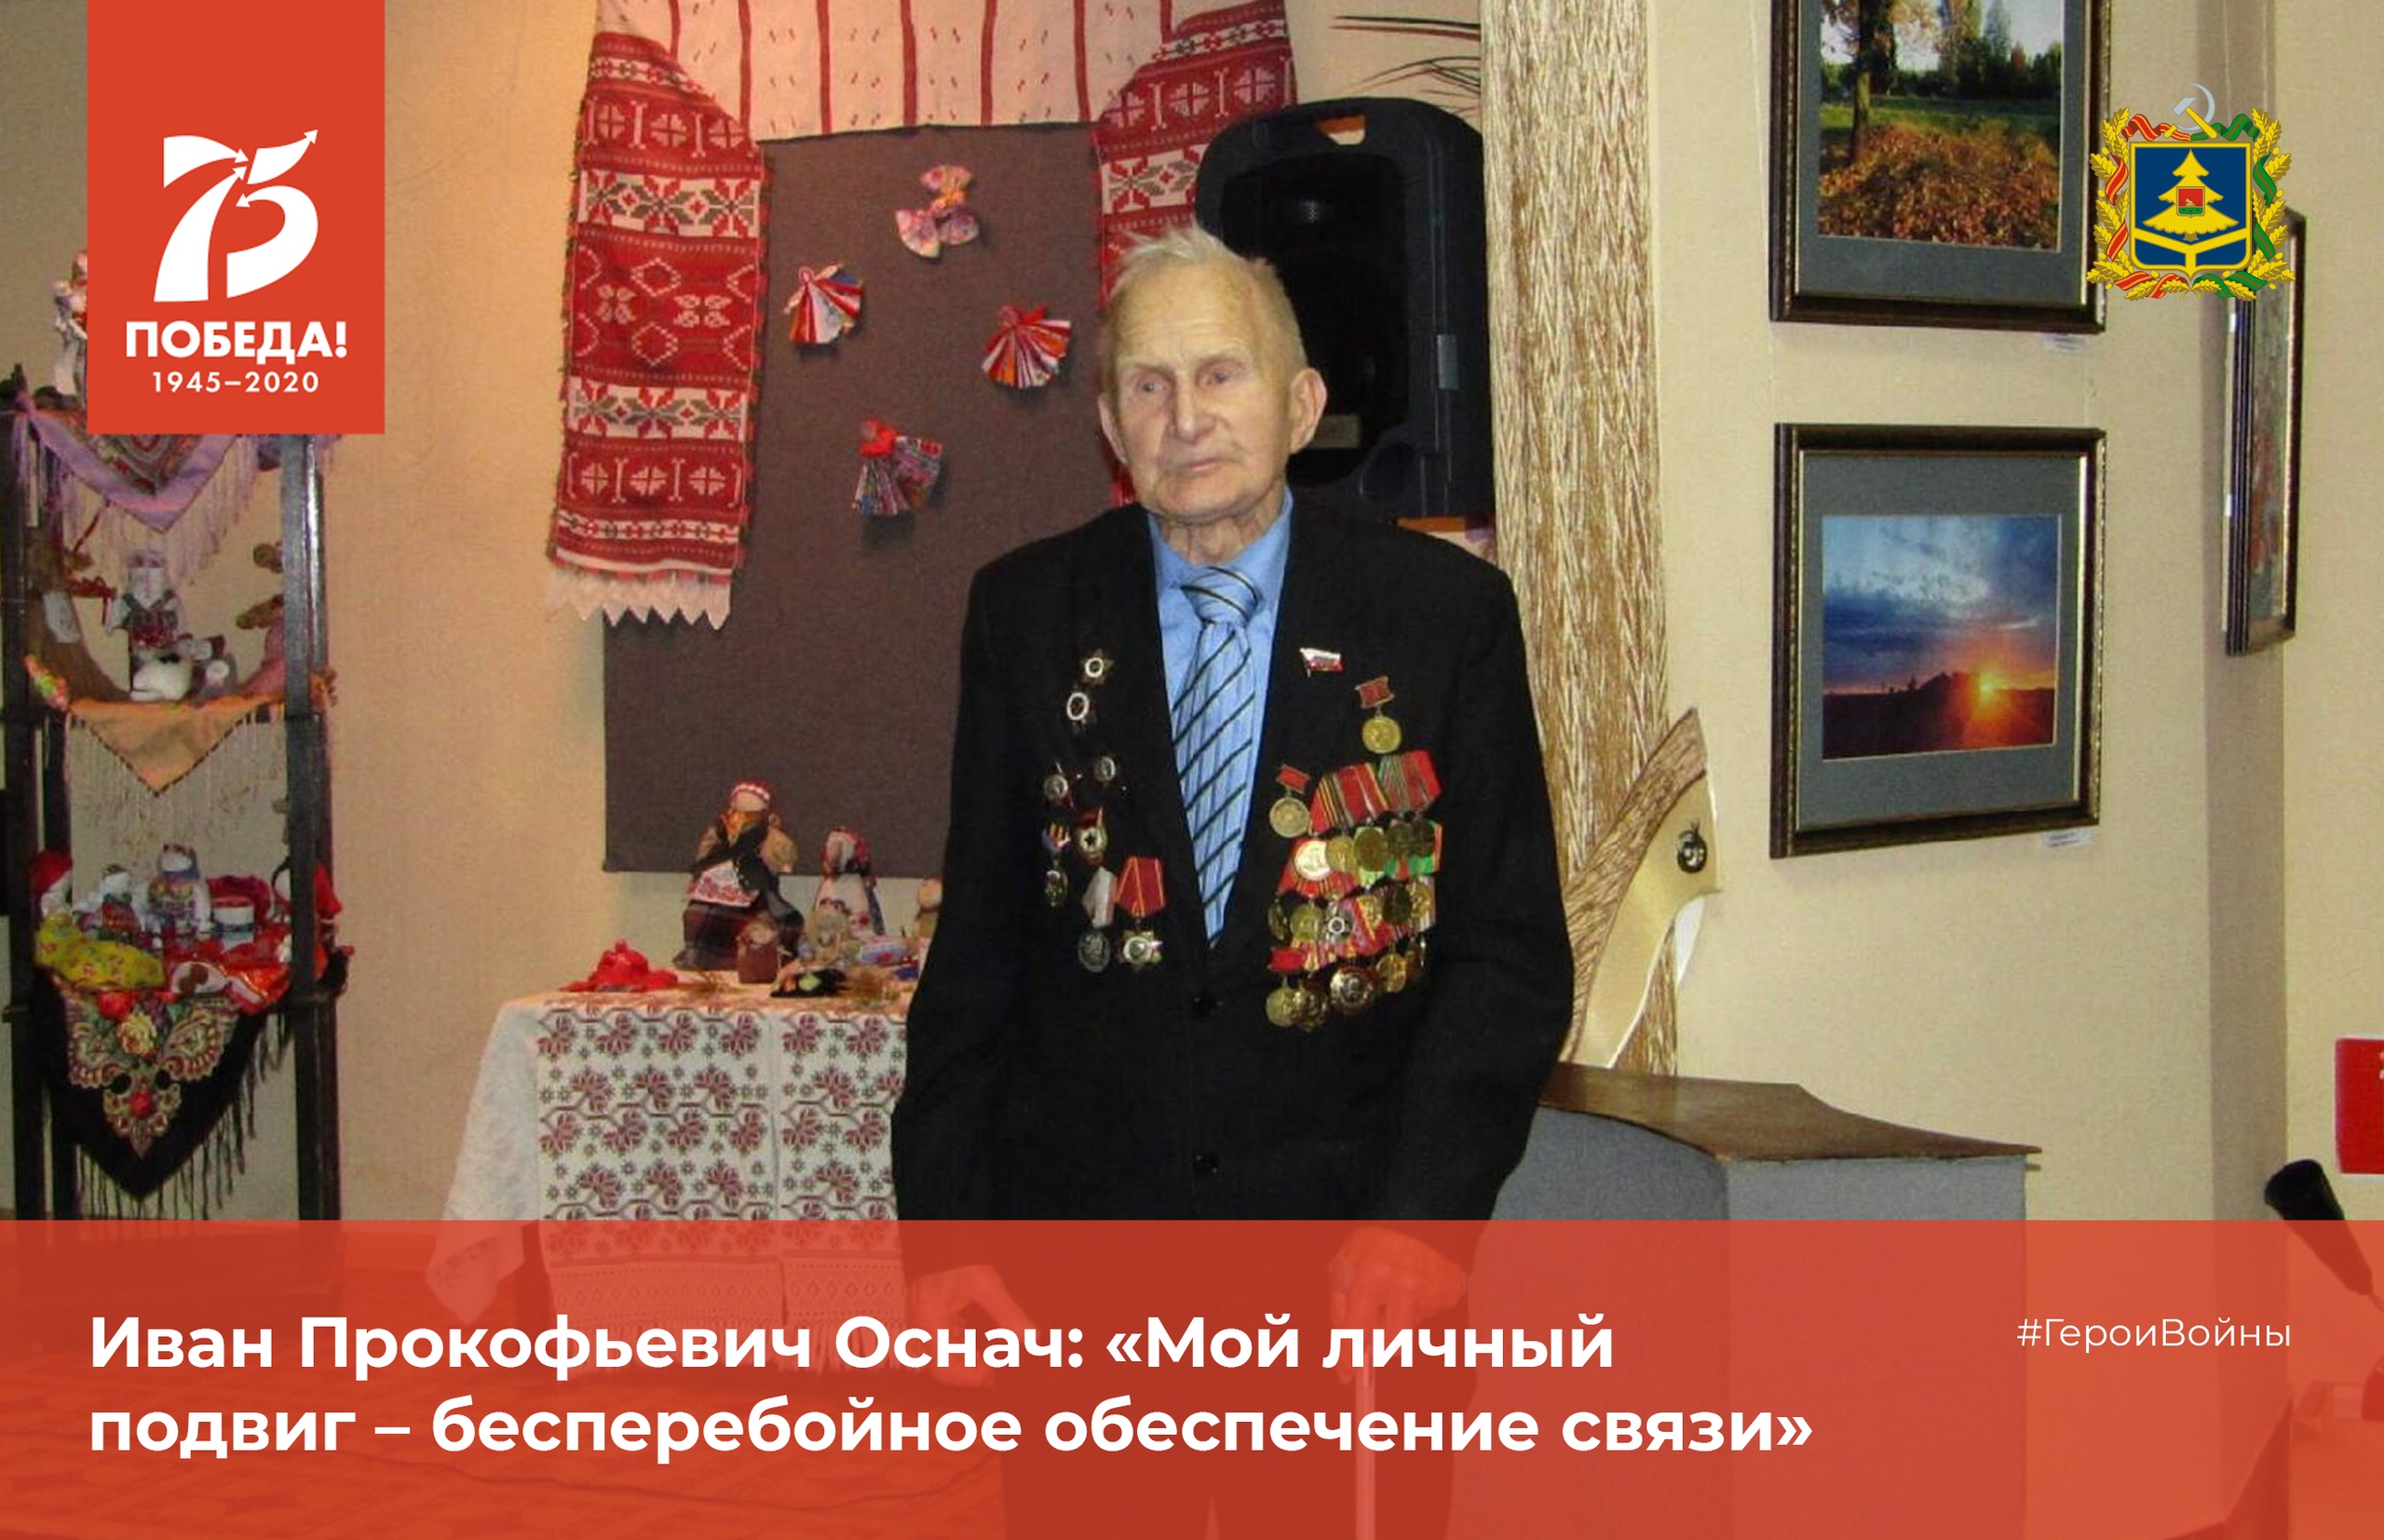 Пуля его не тронула. Сегодня Ивану Прокофьевичу Осначу из Унечи исполняется 95 лет